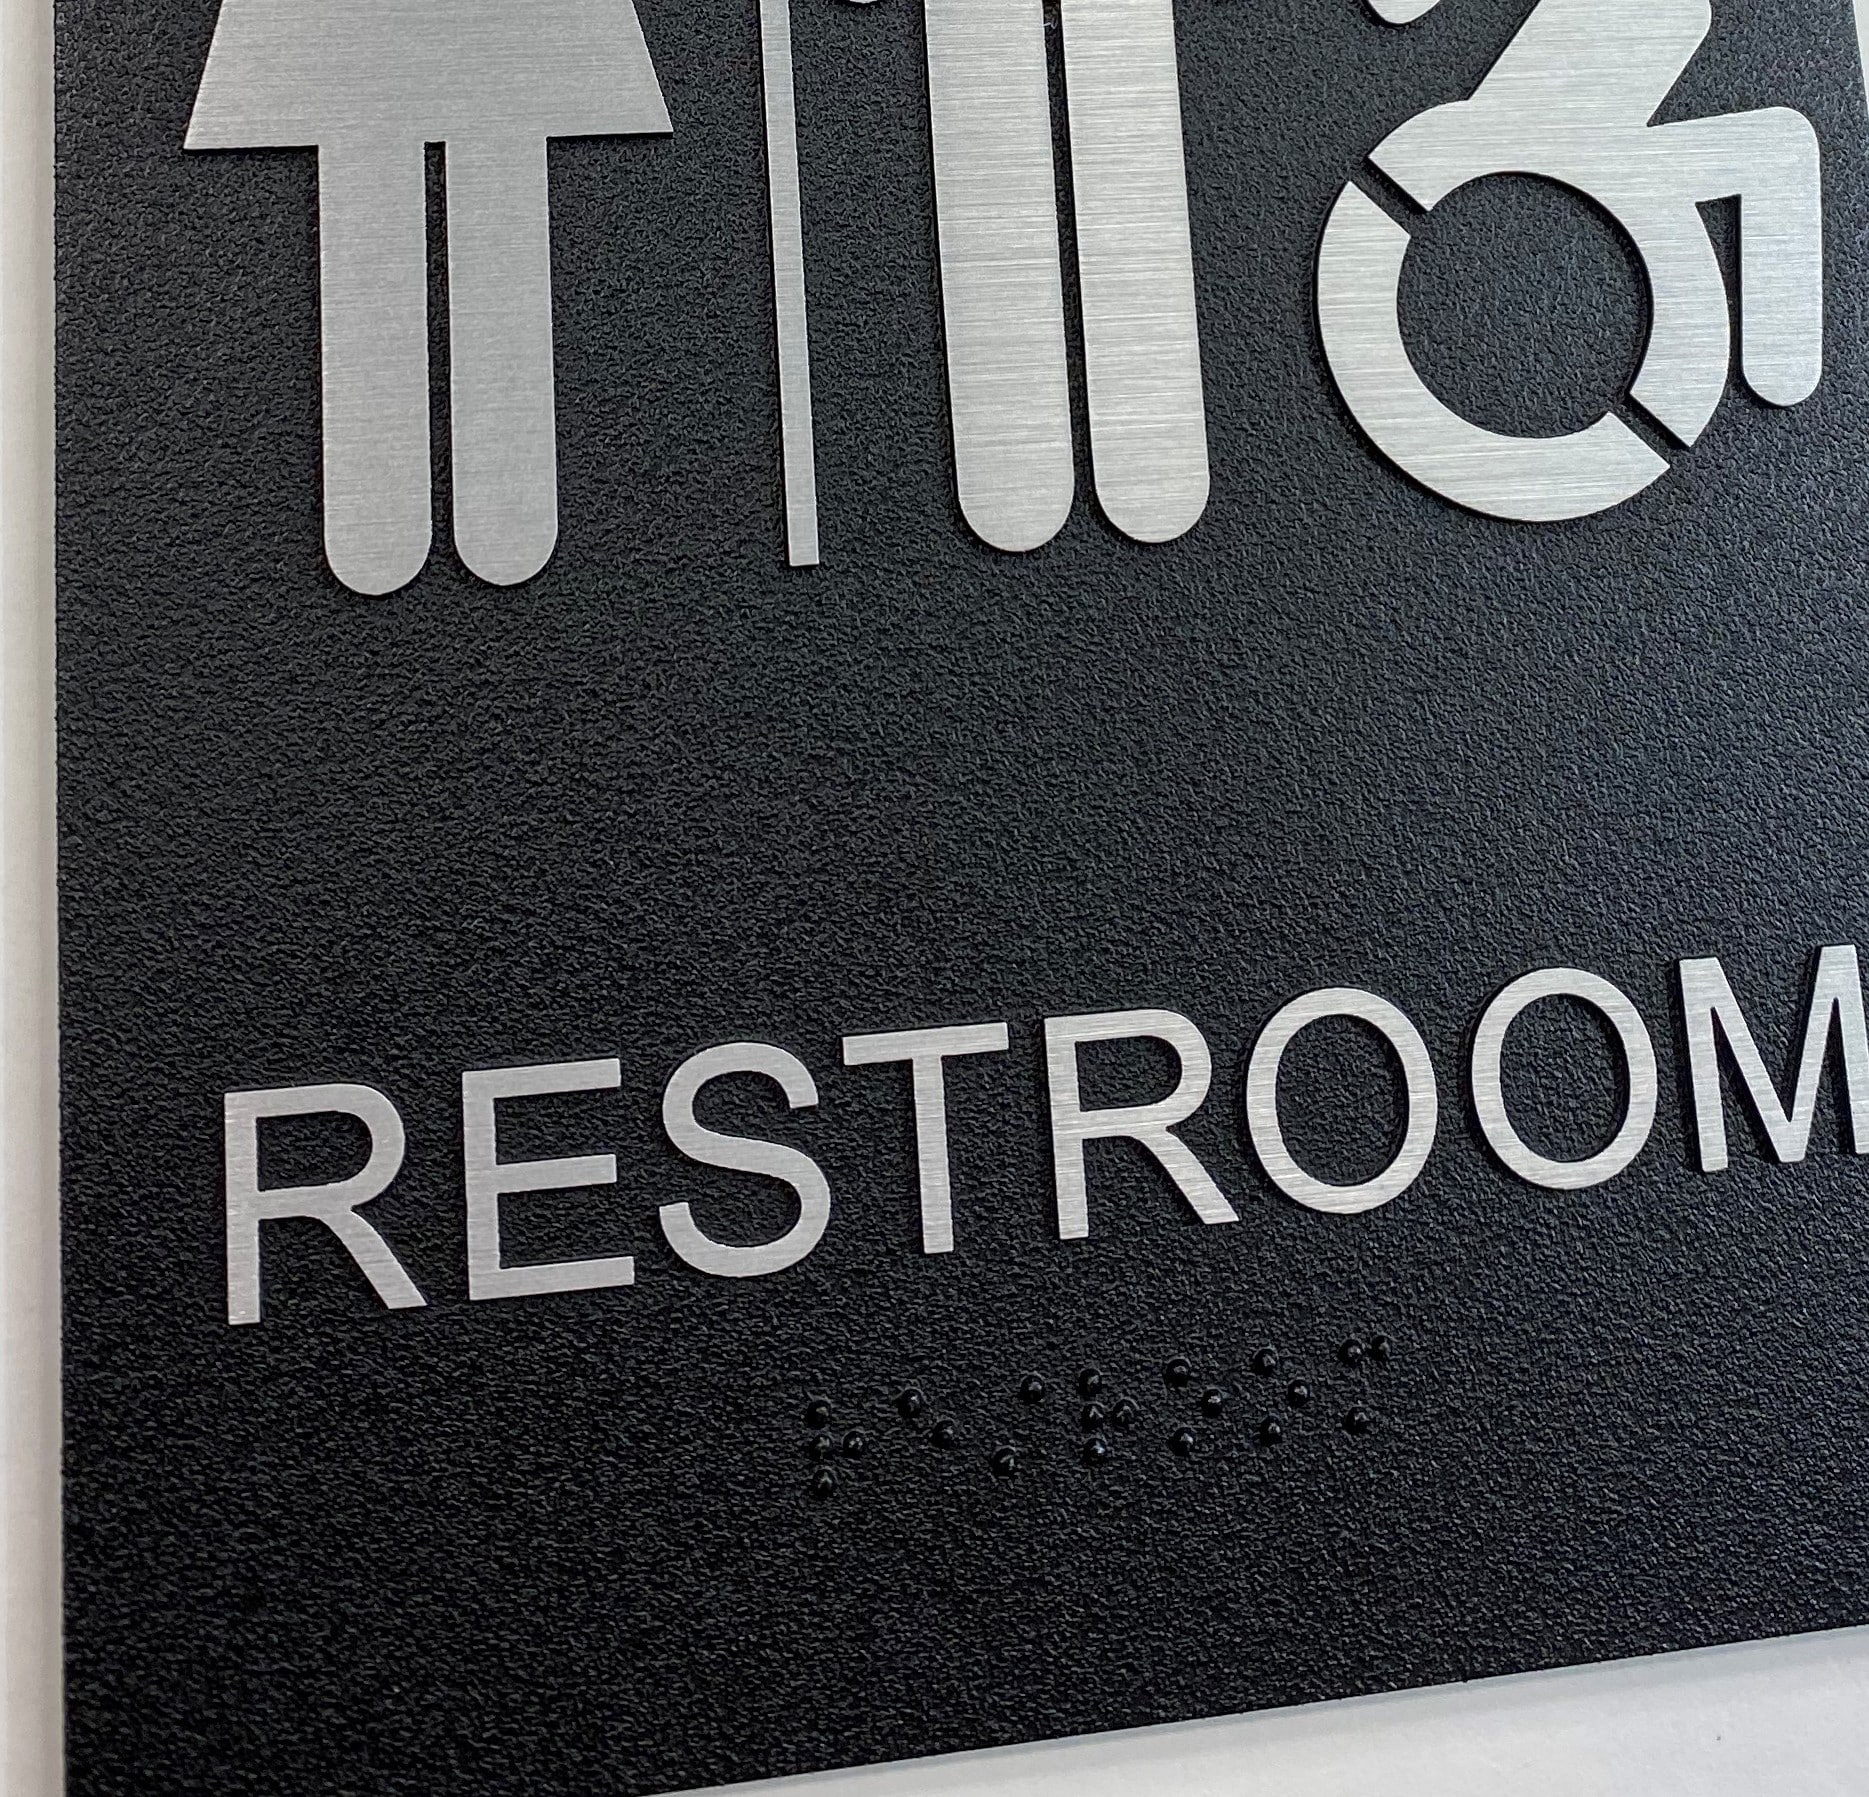 exterior all gender restroom sign, braille close up